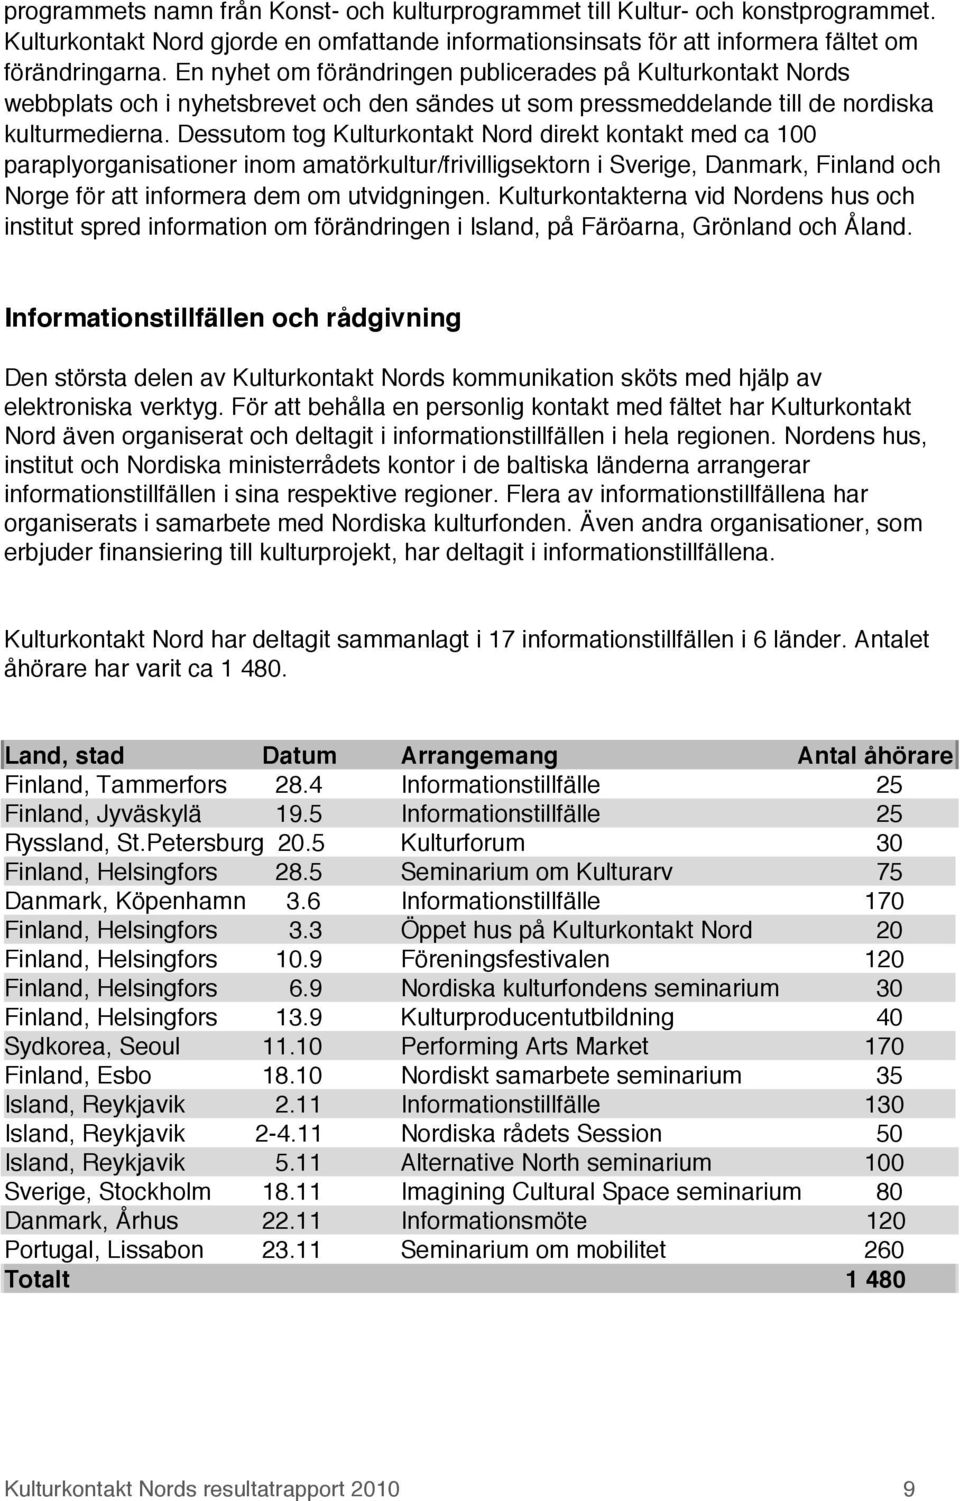 Dessutom tog Kulturkontakt Nord direkt kontakt med ca 100 paraplyorganisationer inom amatörkultur/frivilligsektorn i Sverige, Danmark, Finland och Norge för att informera dem om utvidgningen.